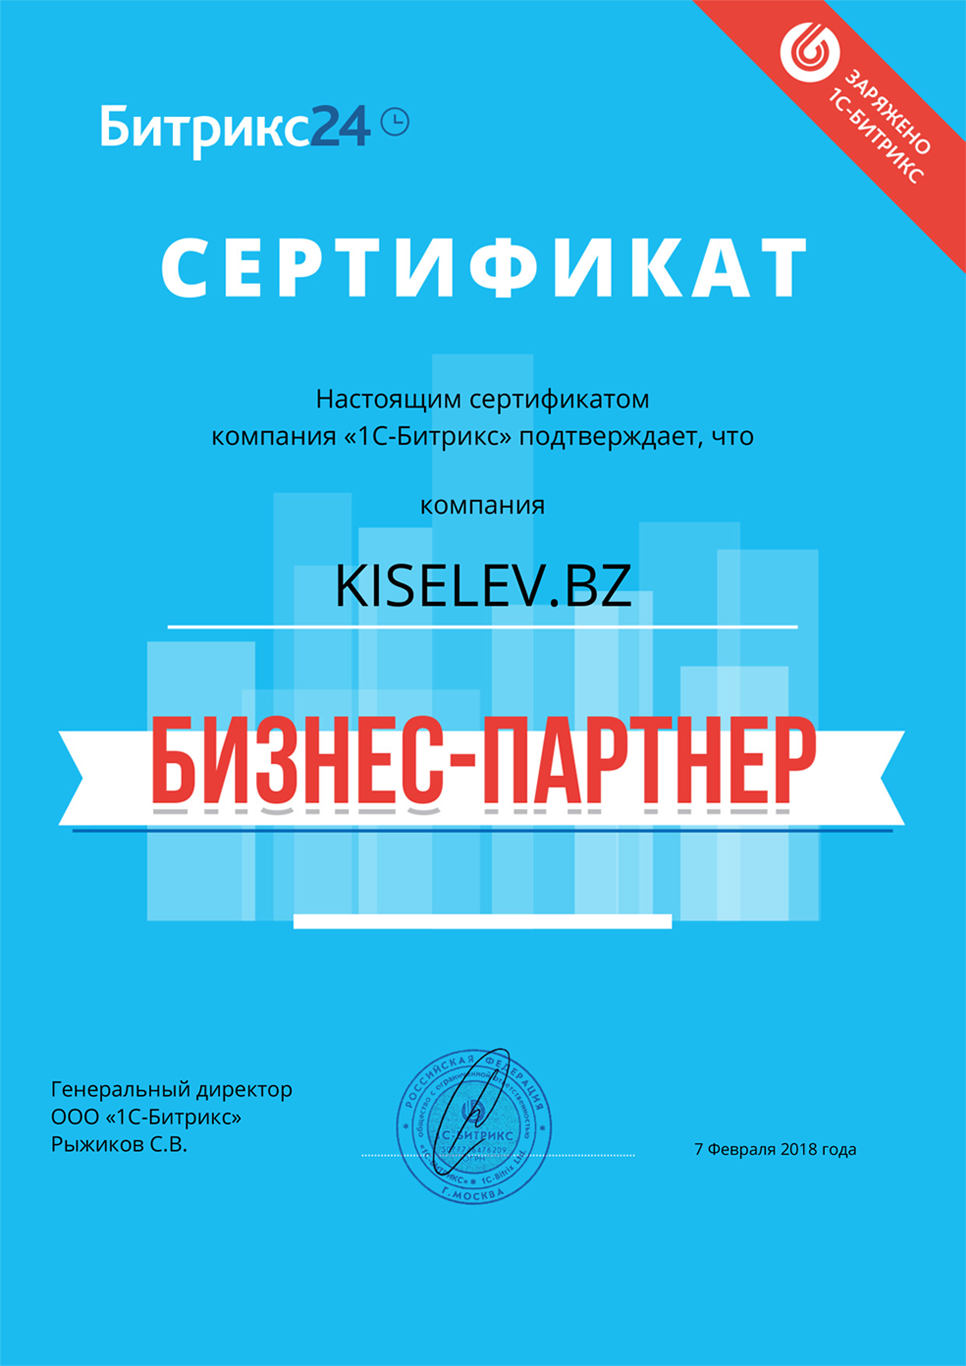 Сертификат партнёра по АМОСРМ в Твери